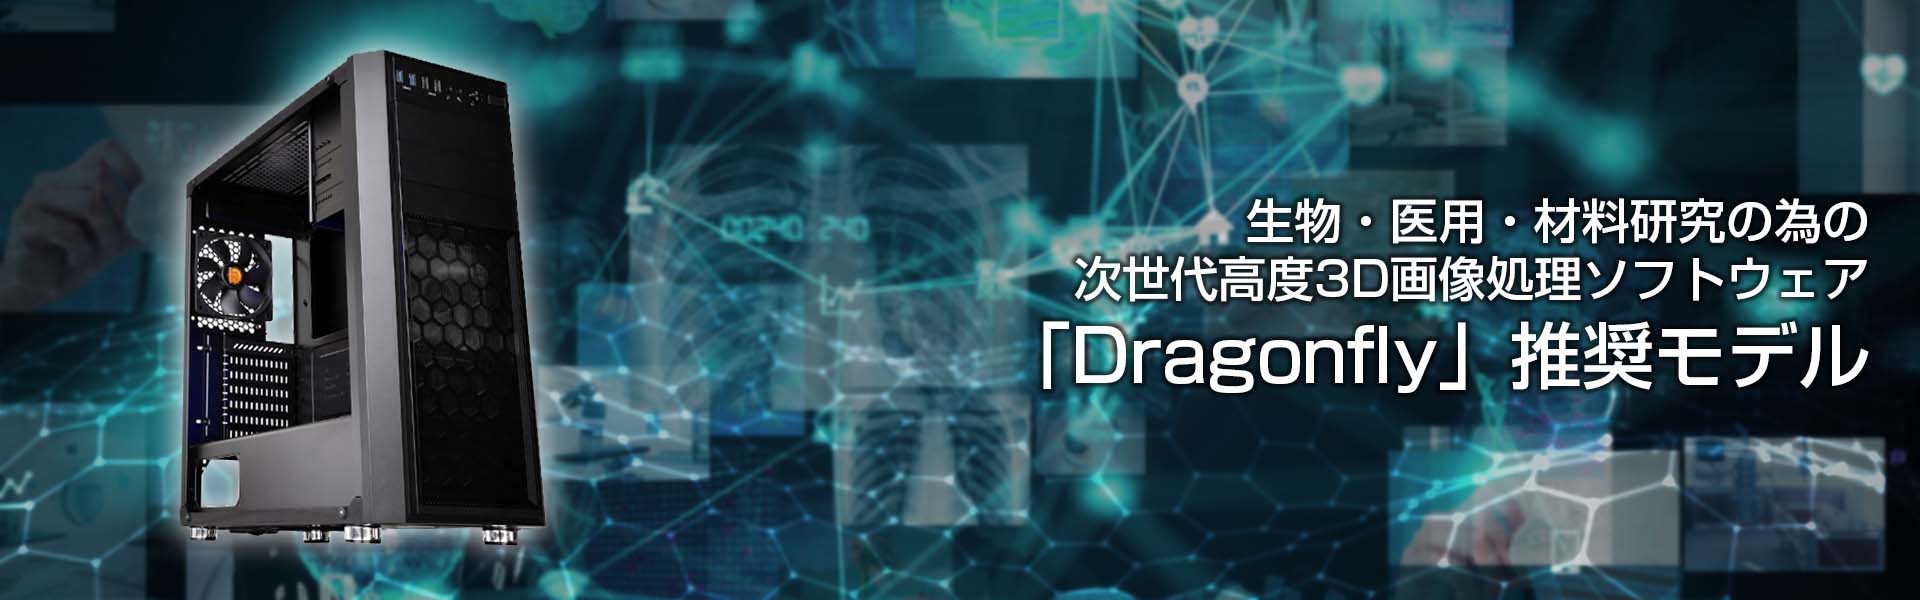 生物・医用・材料研究の為の次世代高度3D画像処理ソフトウェア「Dragonfly」